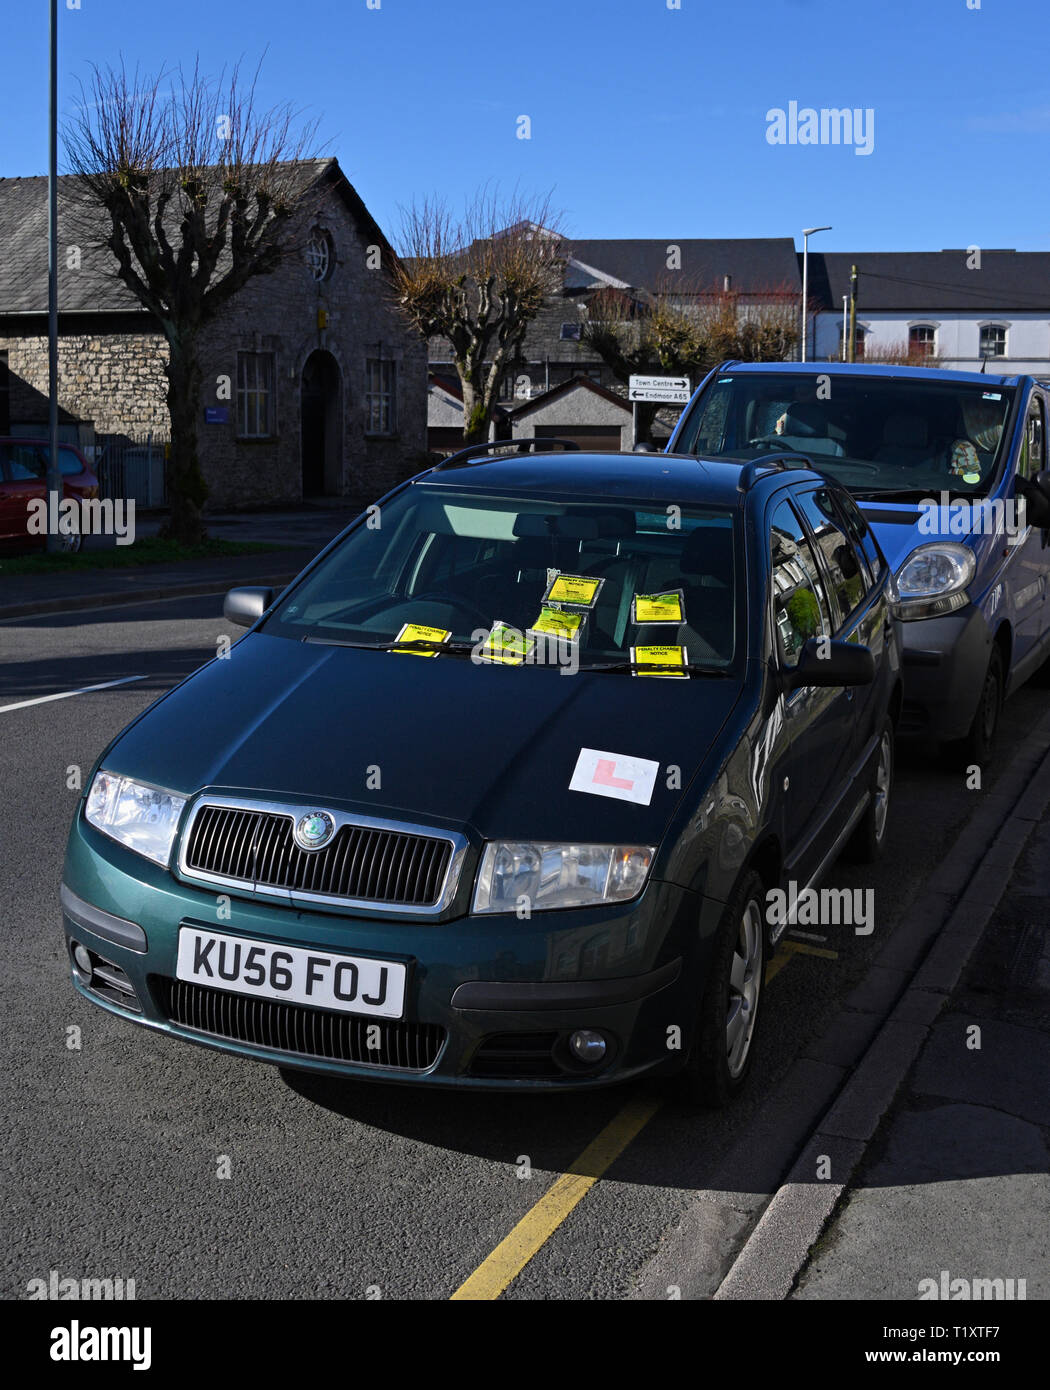 Voiture en stationnement illégal sur la ligne jaune avec six avis de pénalité. Parkside Road, Kendal, Cumbria, Angleterre, Royaume-Uni, Europe. Banque D'Images